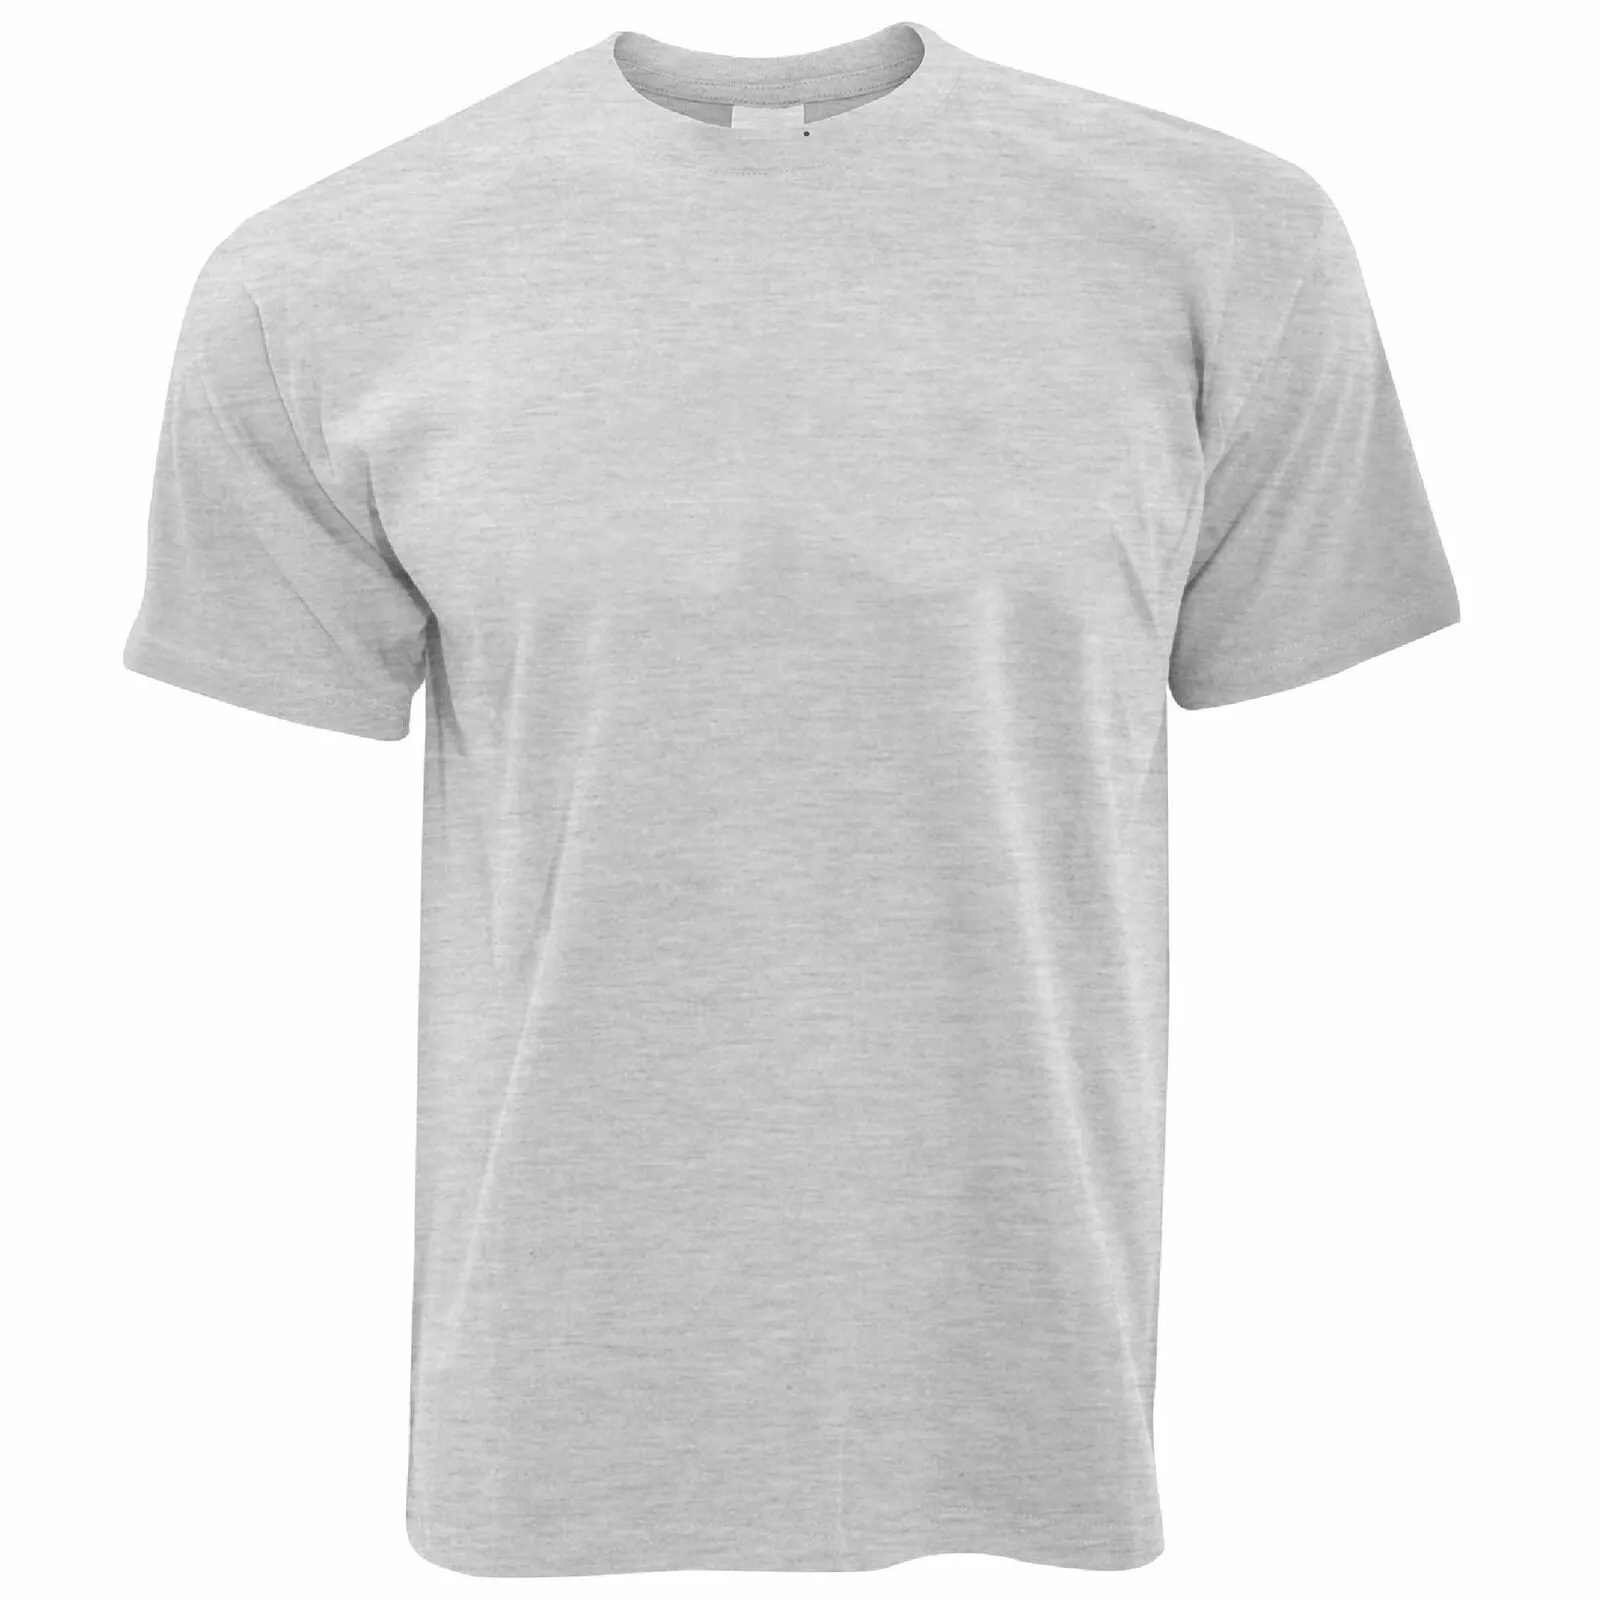 Camiseta de algodão para homens e mulheres, cores sólidas, preço favorável, secagem rápida